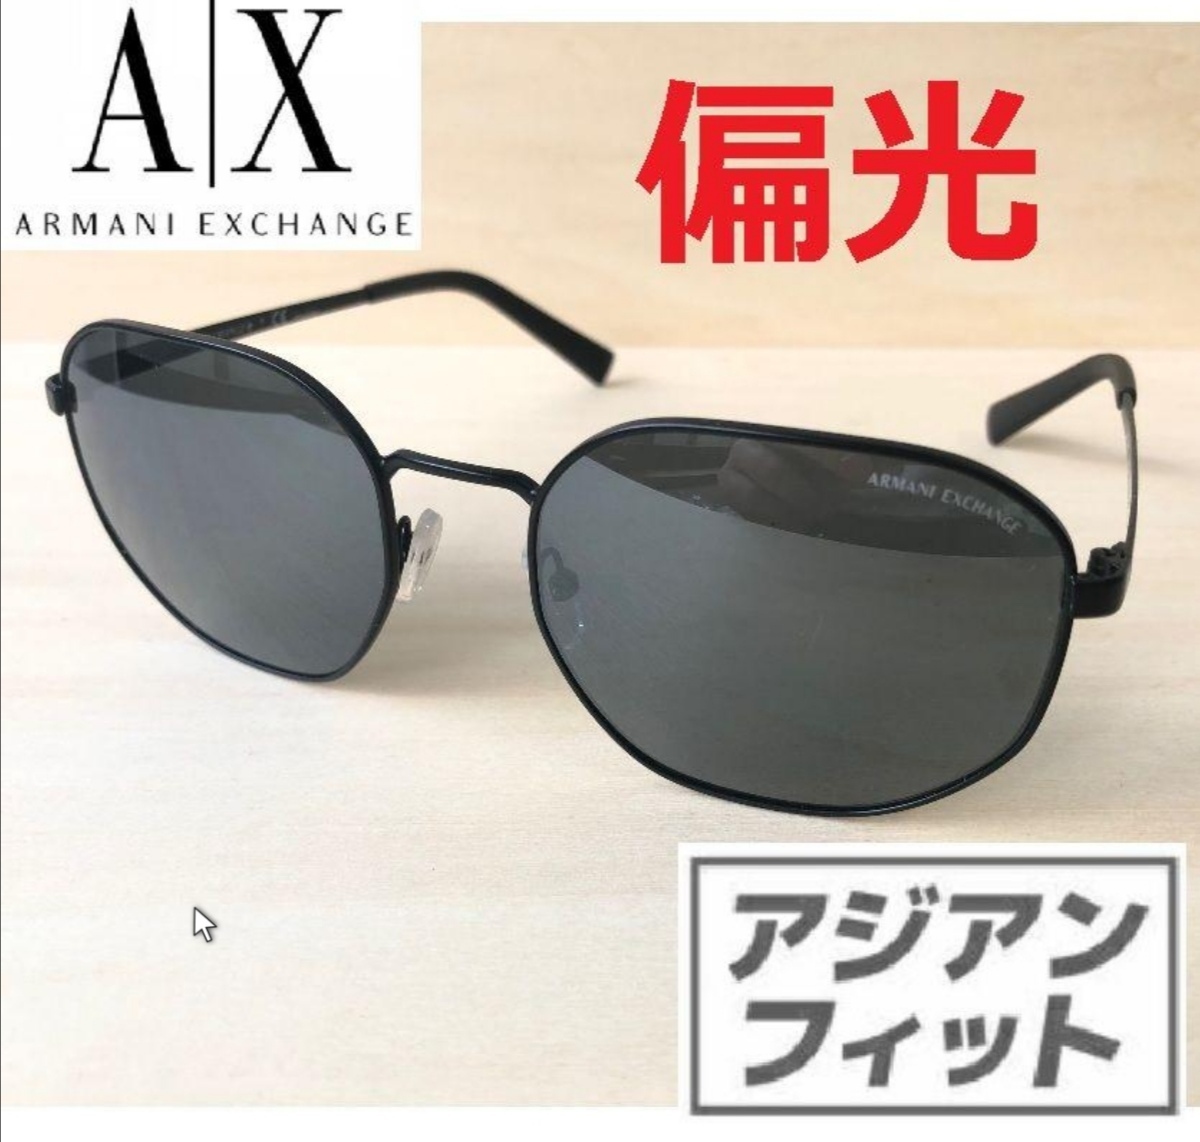 偏光アルマーニARMANIサングラス眼鏡メガネめがねラウンド型ボストン正規品AXアルマーニエクスチェンジARMANI EXCHANGE_画像1